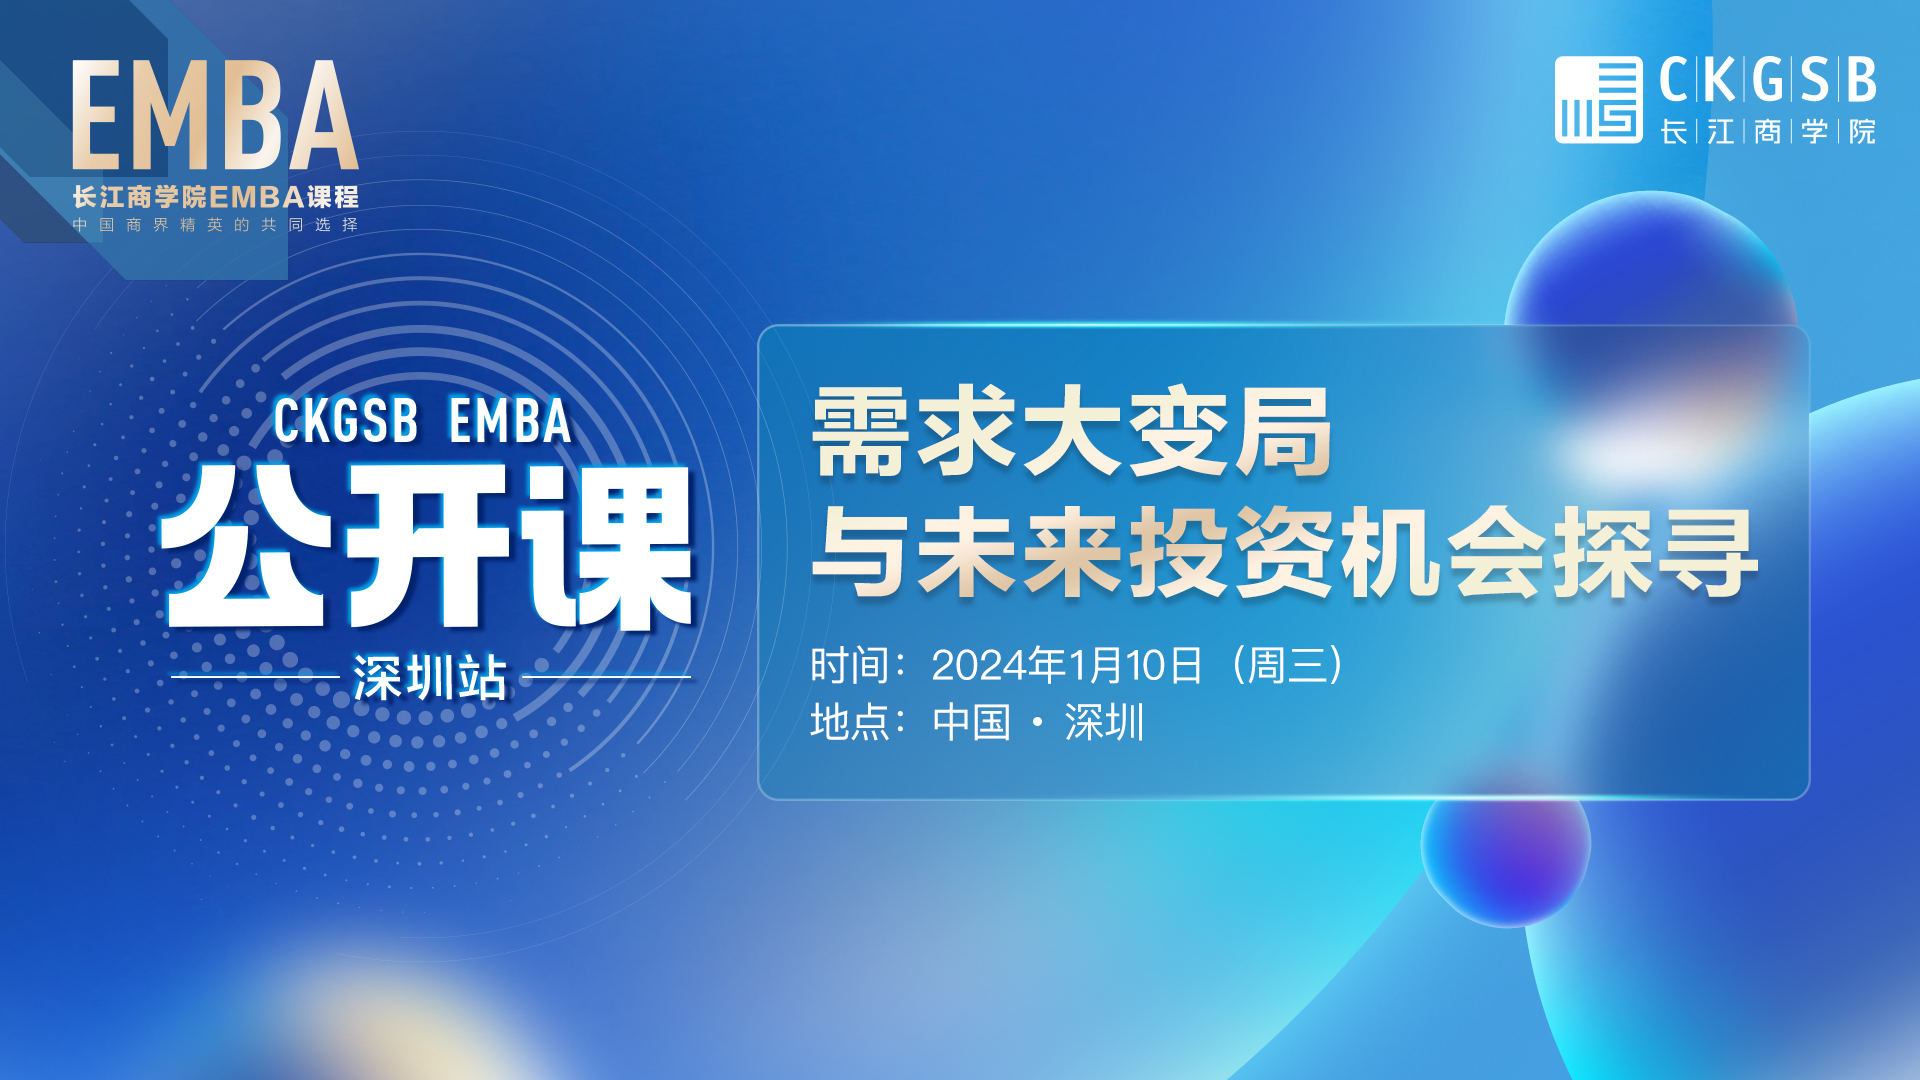 长江EMBA公开课 · 深圳站<br />需求大变局与未来投资机会探寻